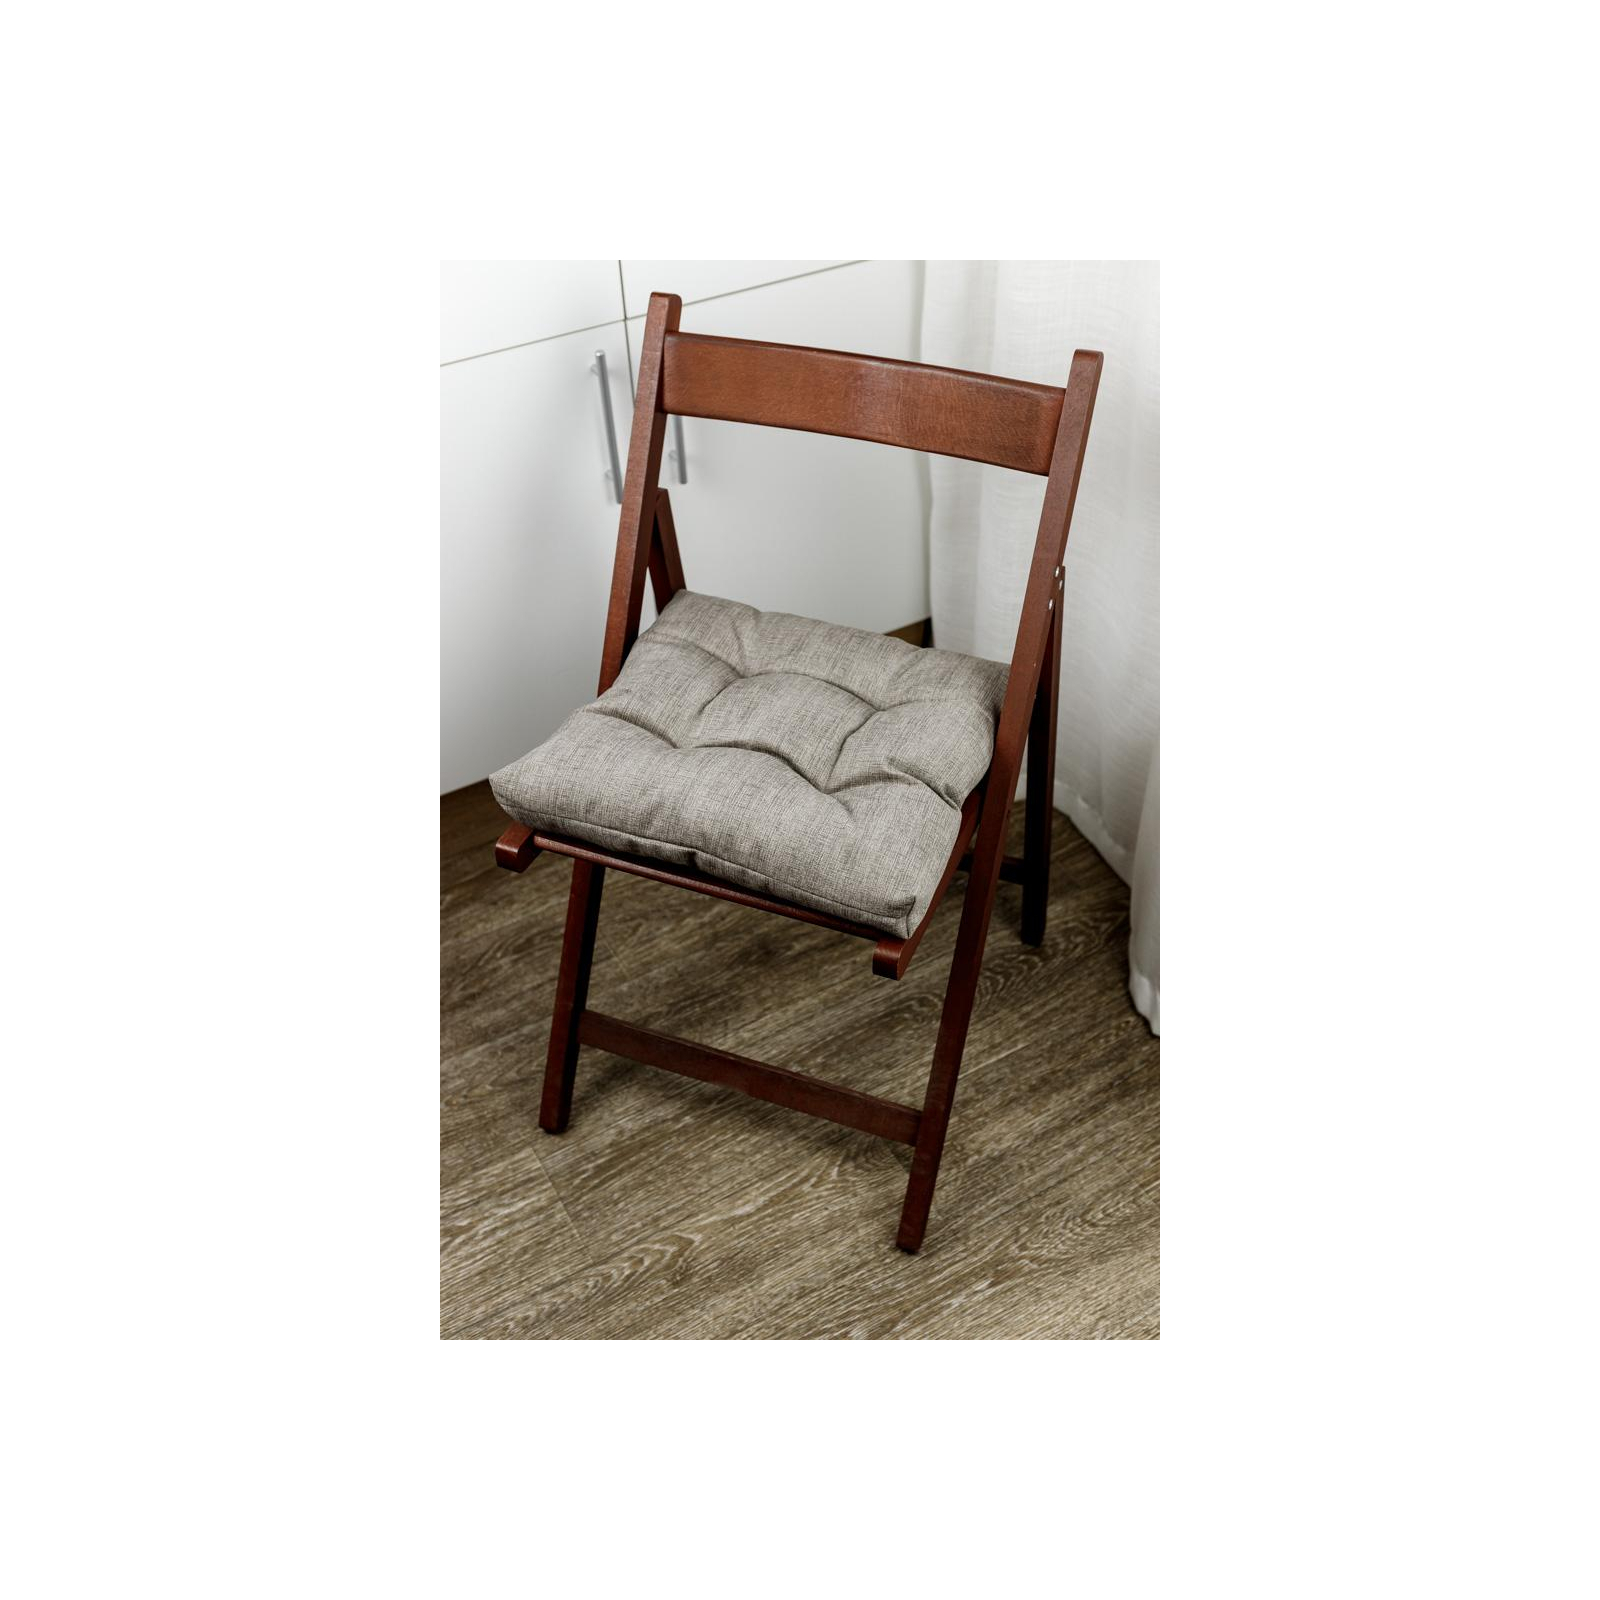 Подушка на стілець Прованс FIESTA Бордо 40х40 см (33512) зображення 2